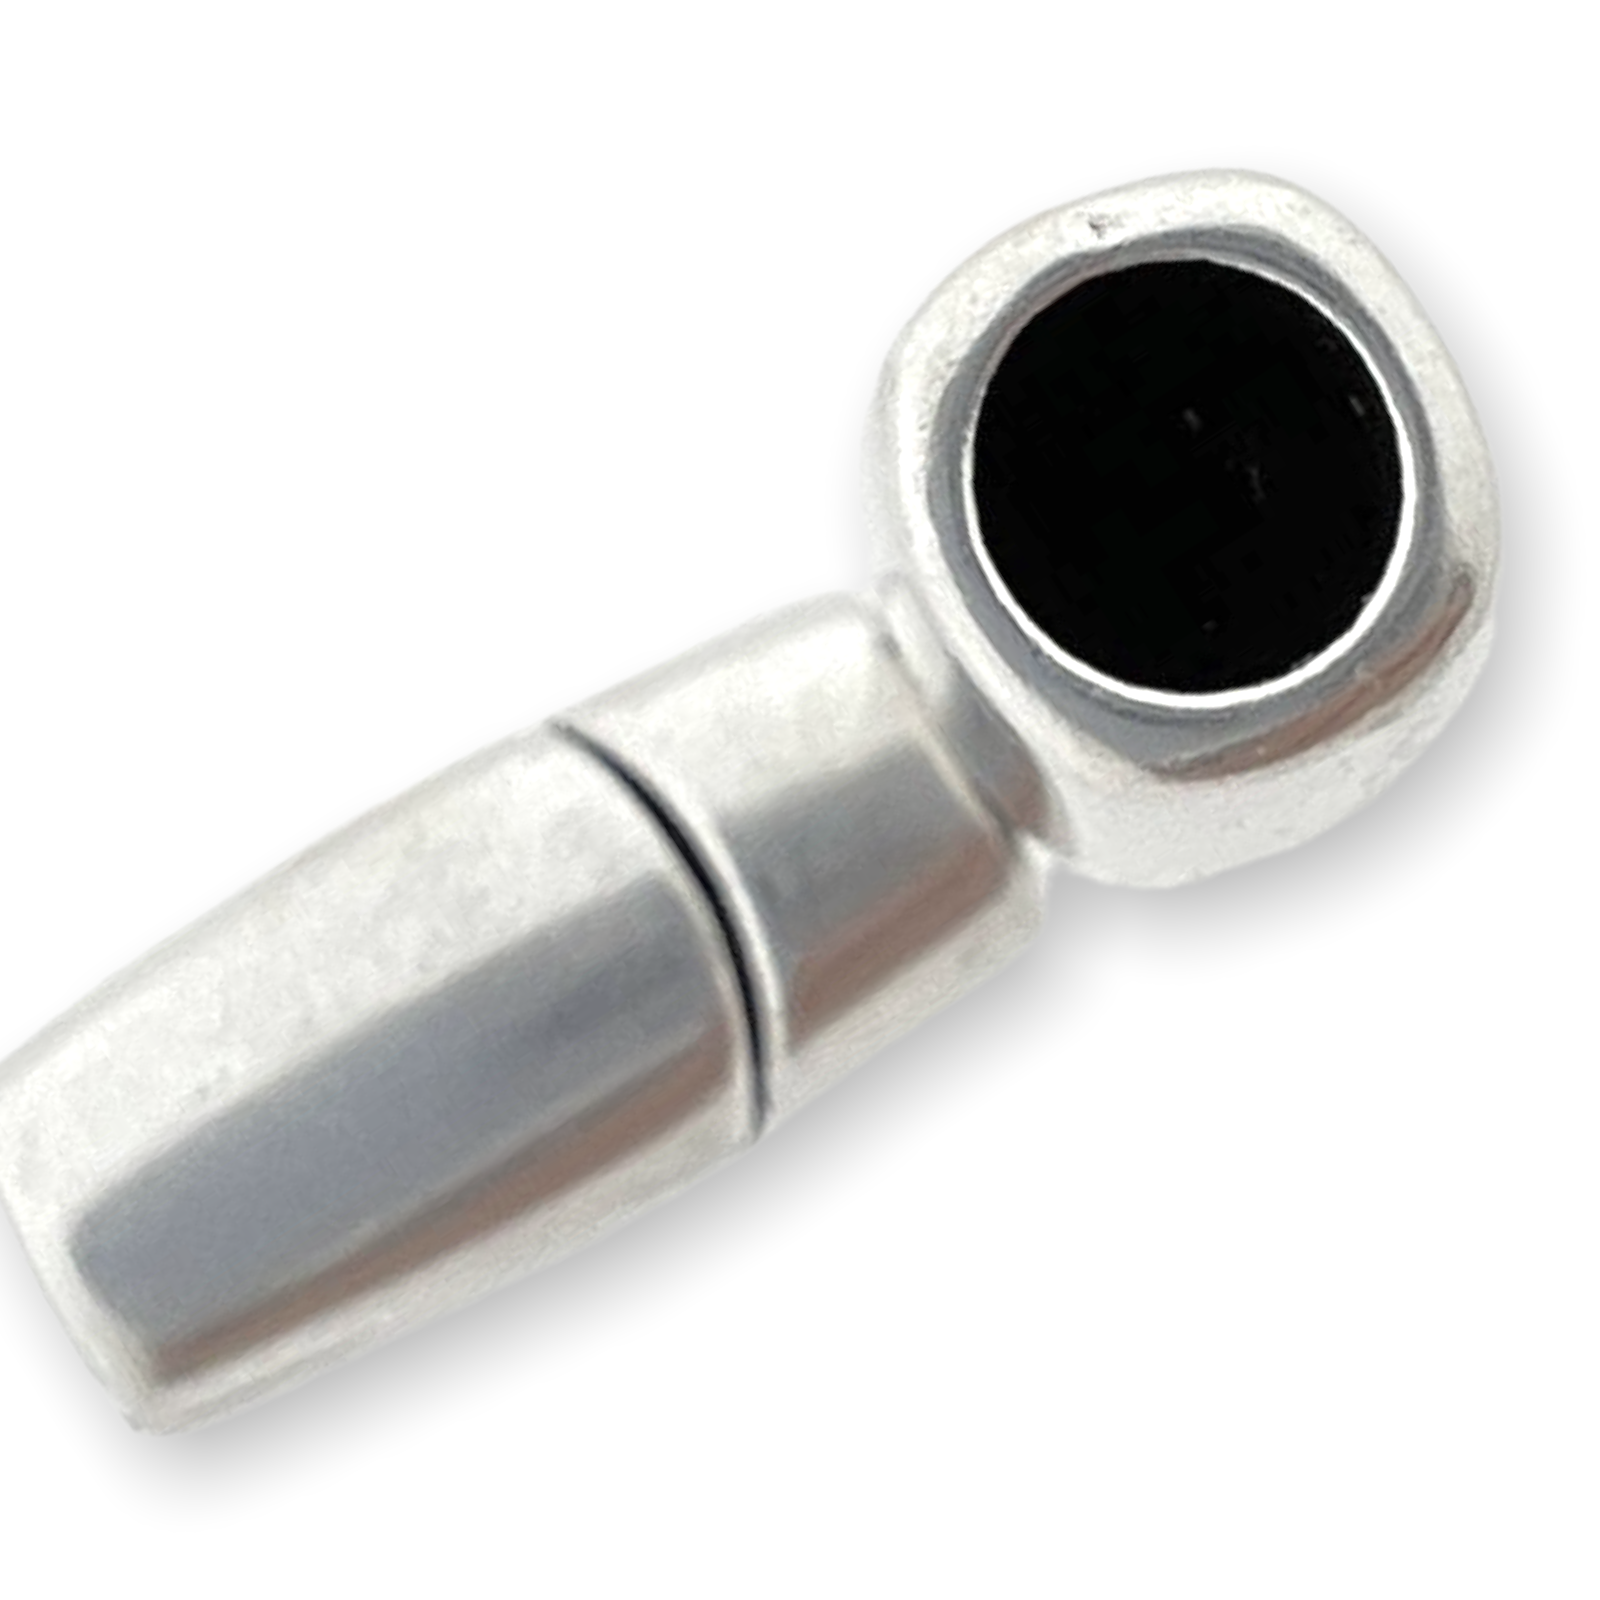 Magneetsluiting Zilver DQ 18x8mm-bedels-Kraaltjes van Renate